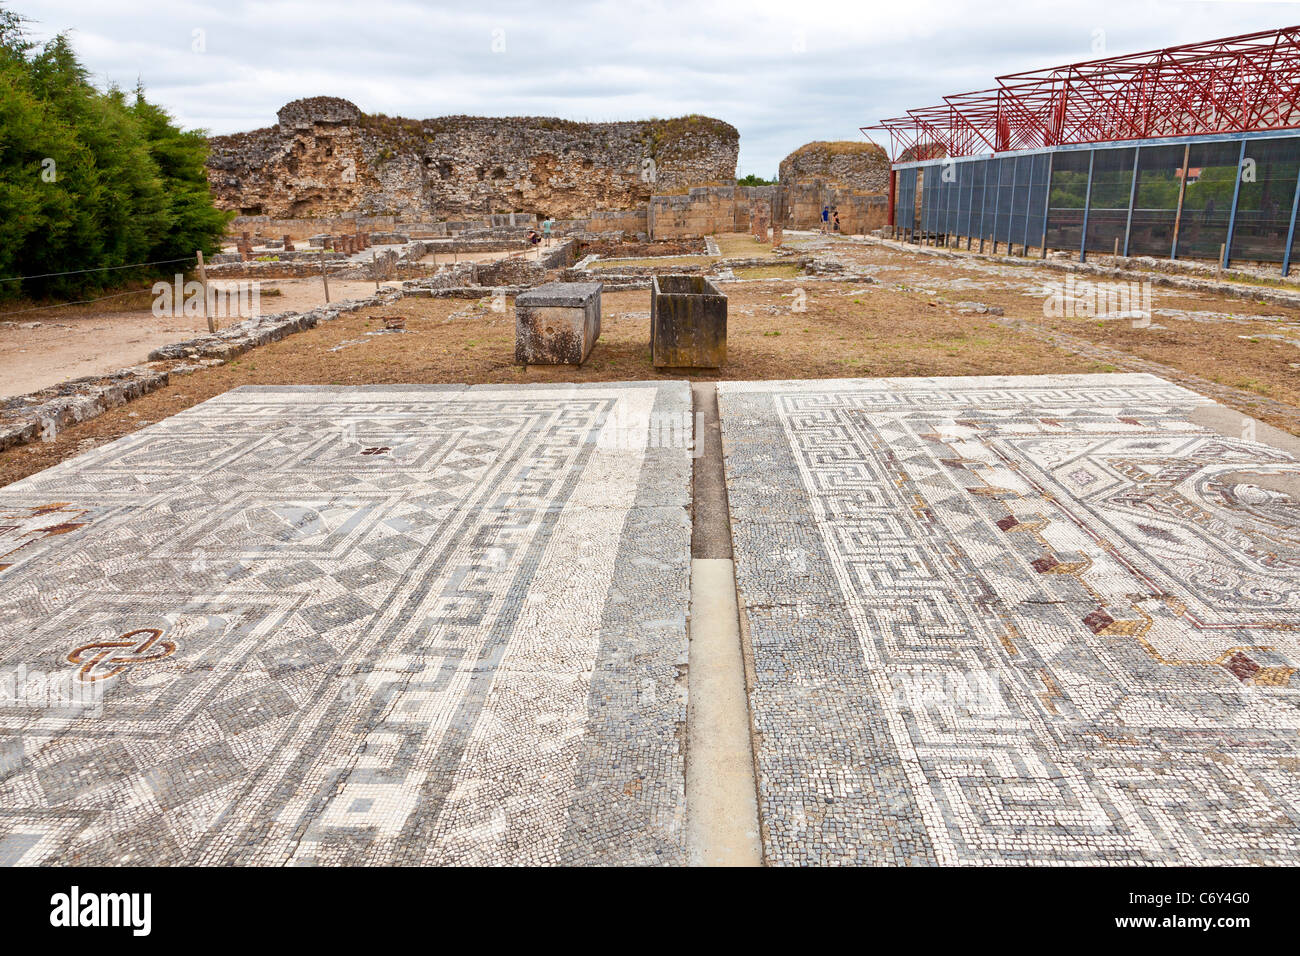 I mosaici romani nella città romana di Conimbriga, le meglio conservate rovine romane in Portogallo. Foto Stock